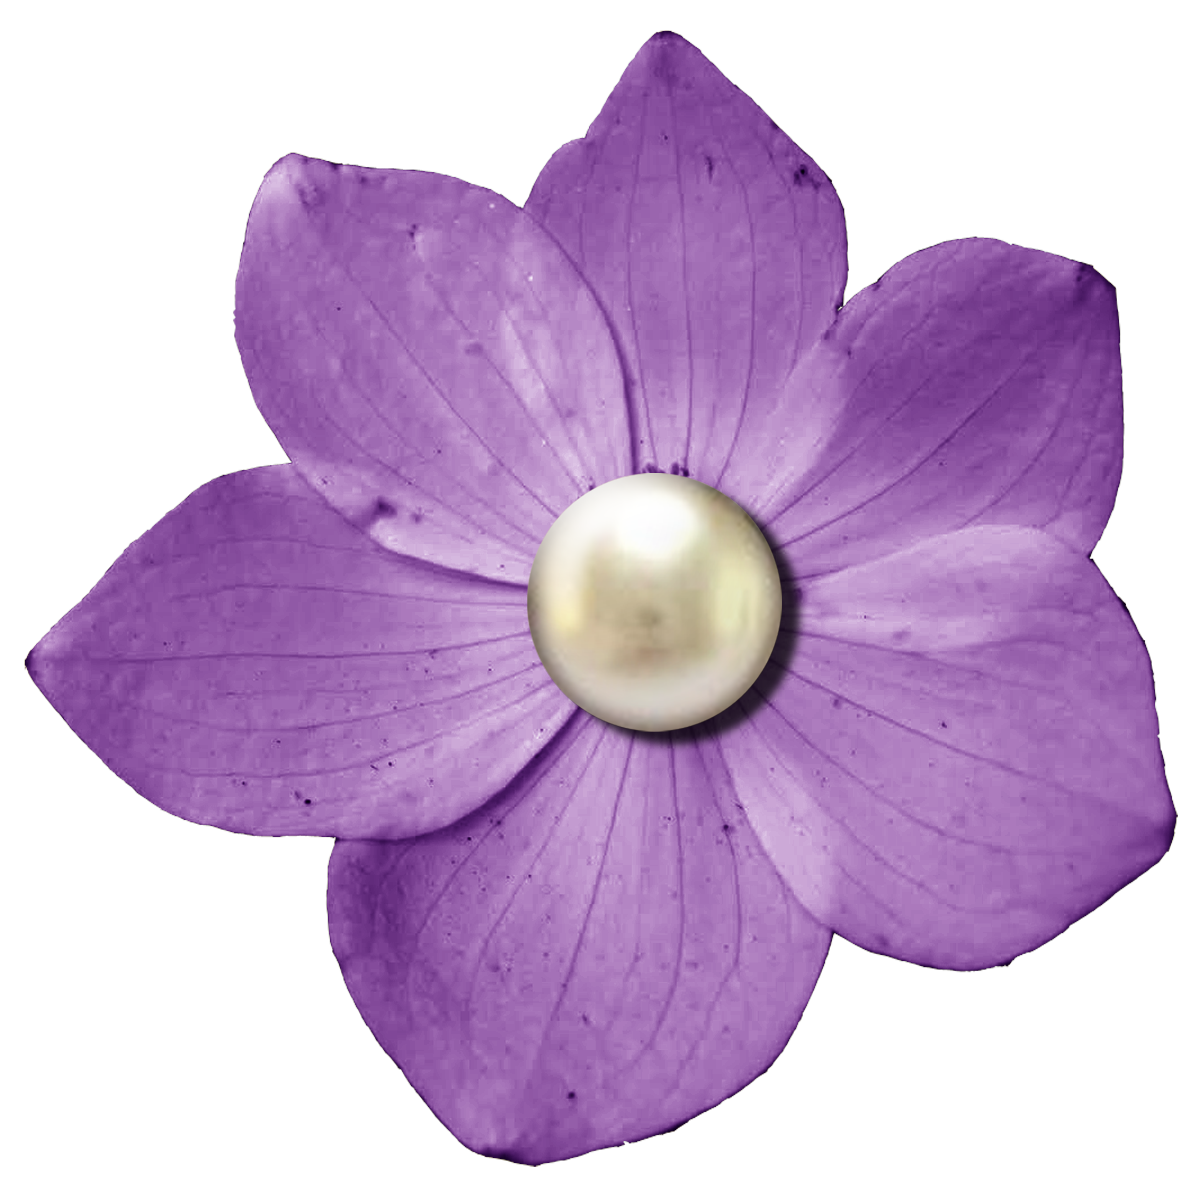 Lavender clipart mauve flower, Lavender mauve flower Transparent FREE